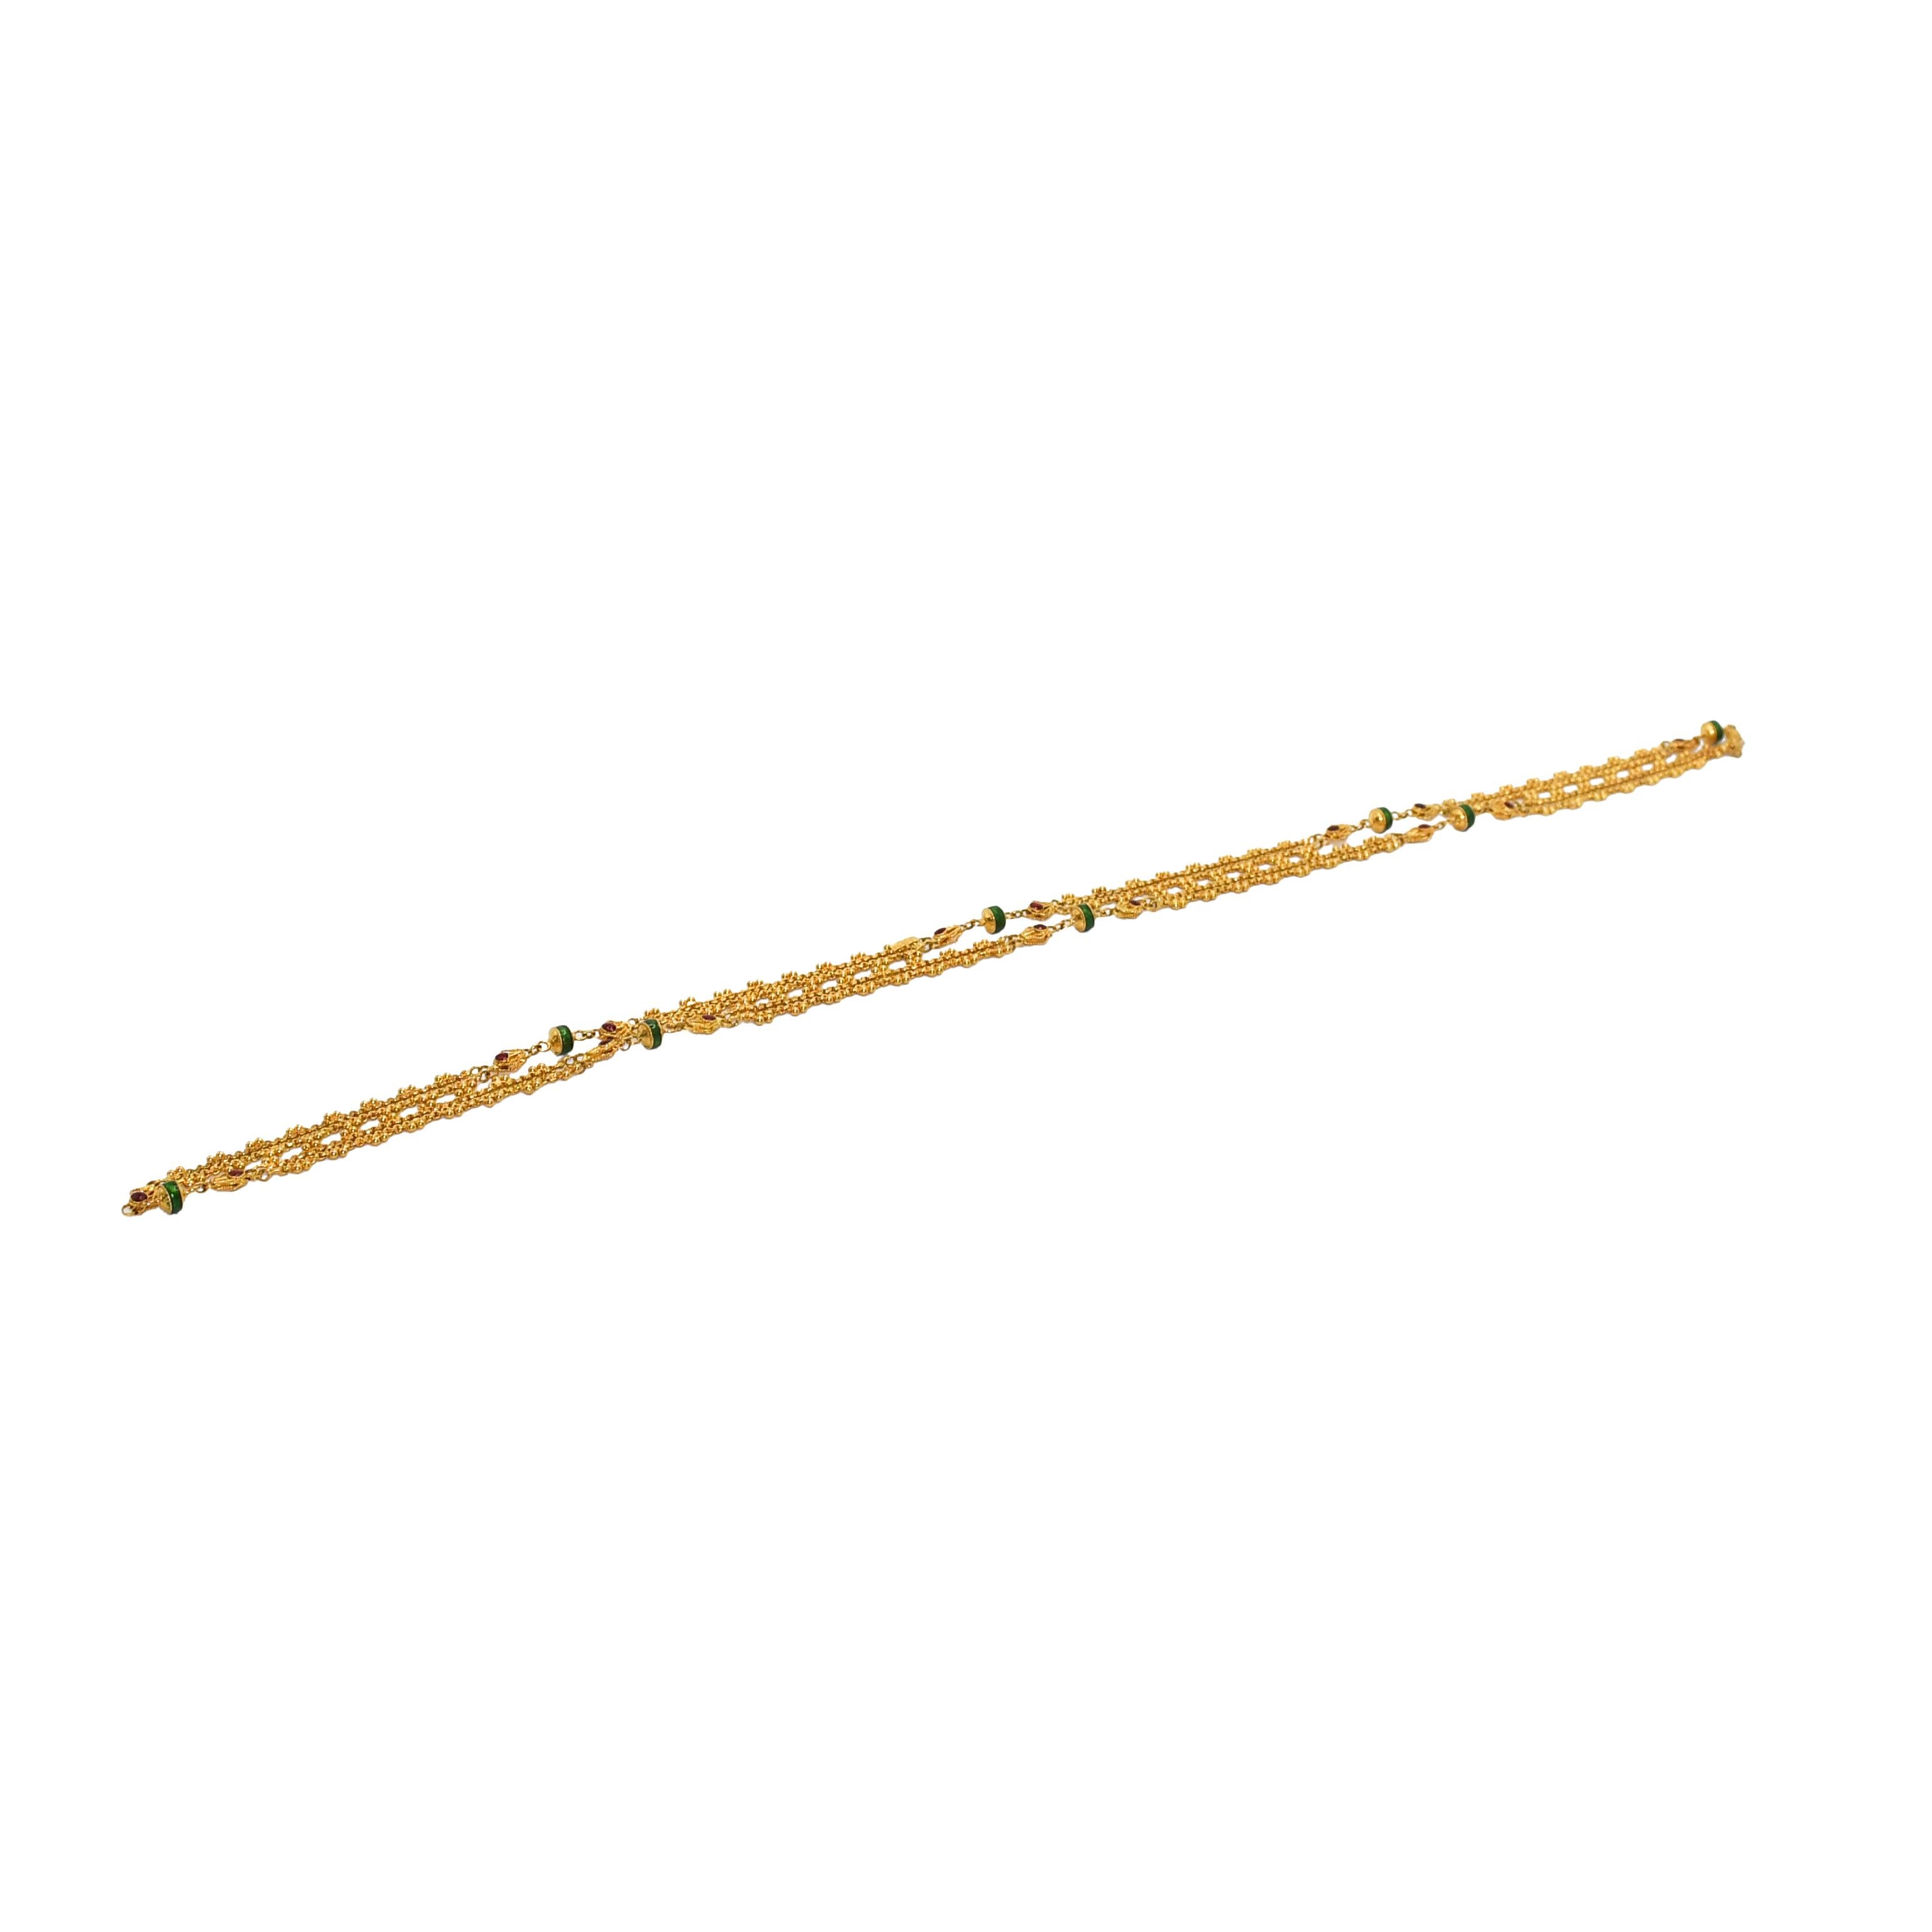 22k verziert Gelbgold Emaille Halskette.
Testet 22k, wiegt 29.4gr
Länge 28 Zoll, Breite 5,5 mm